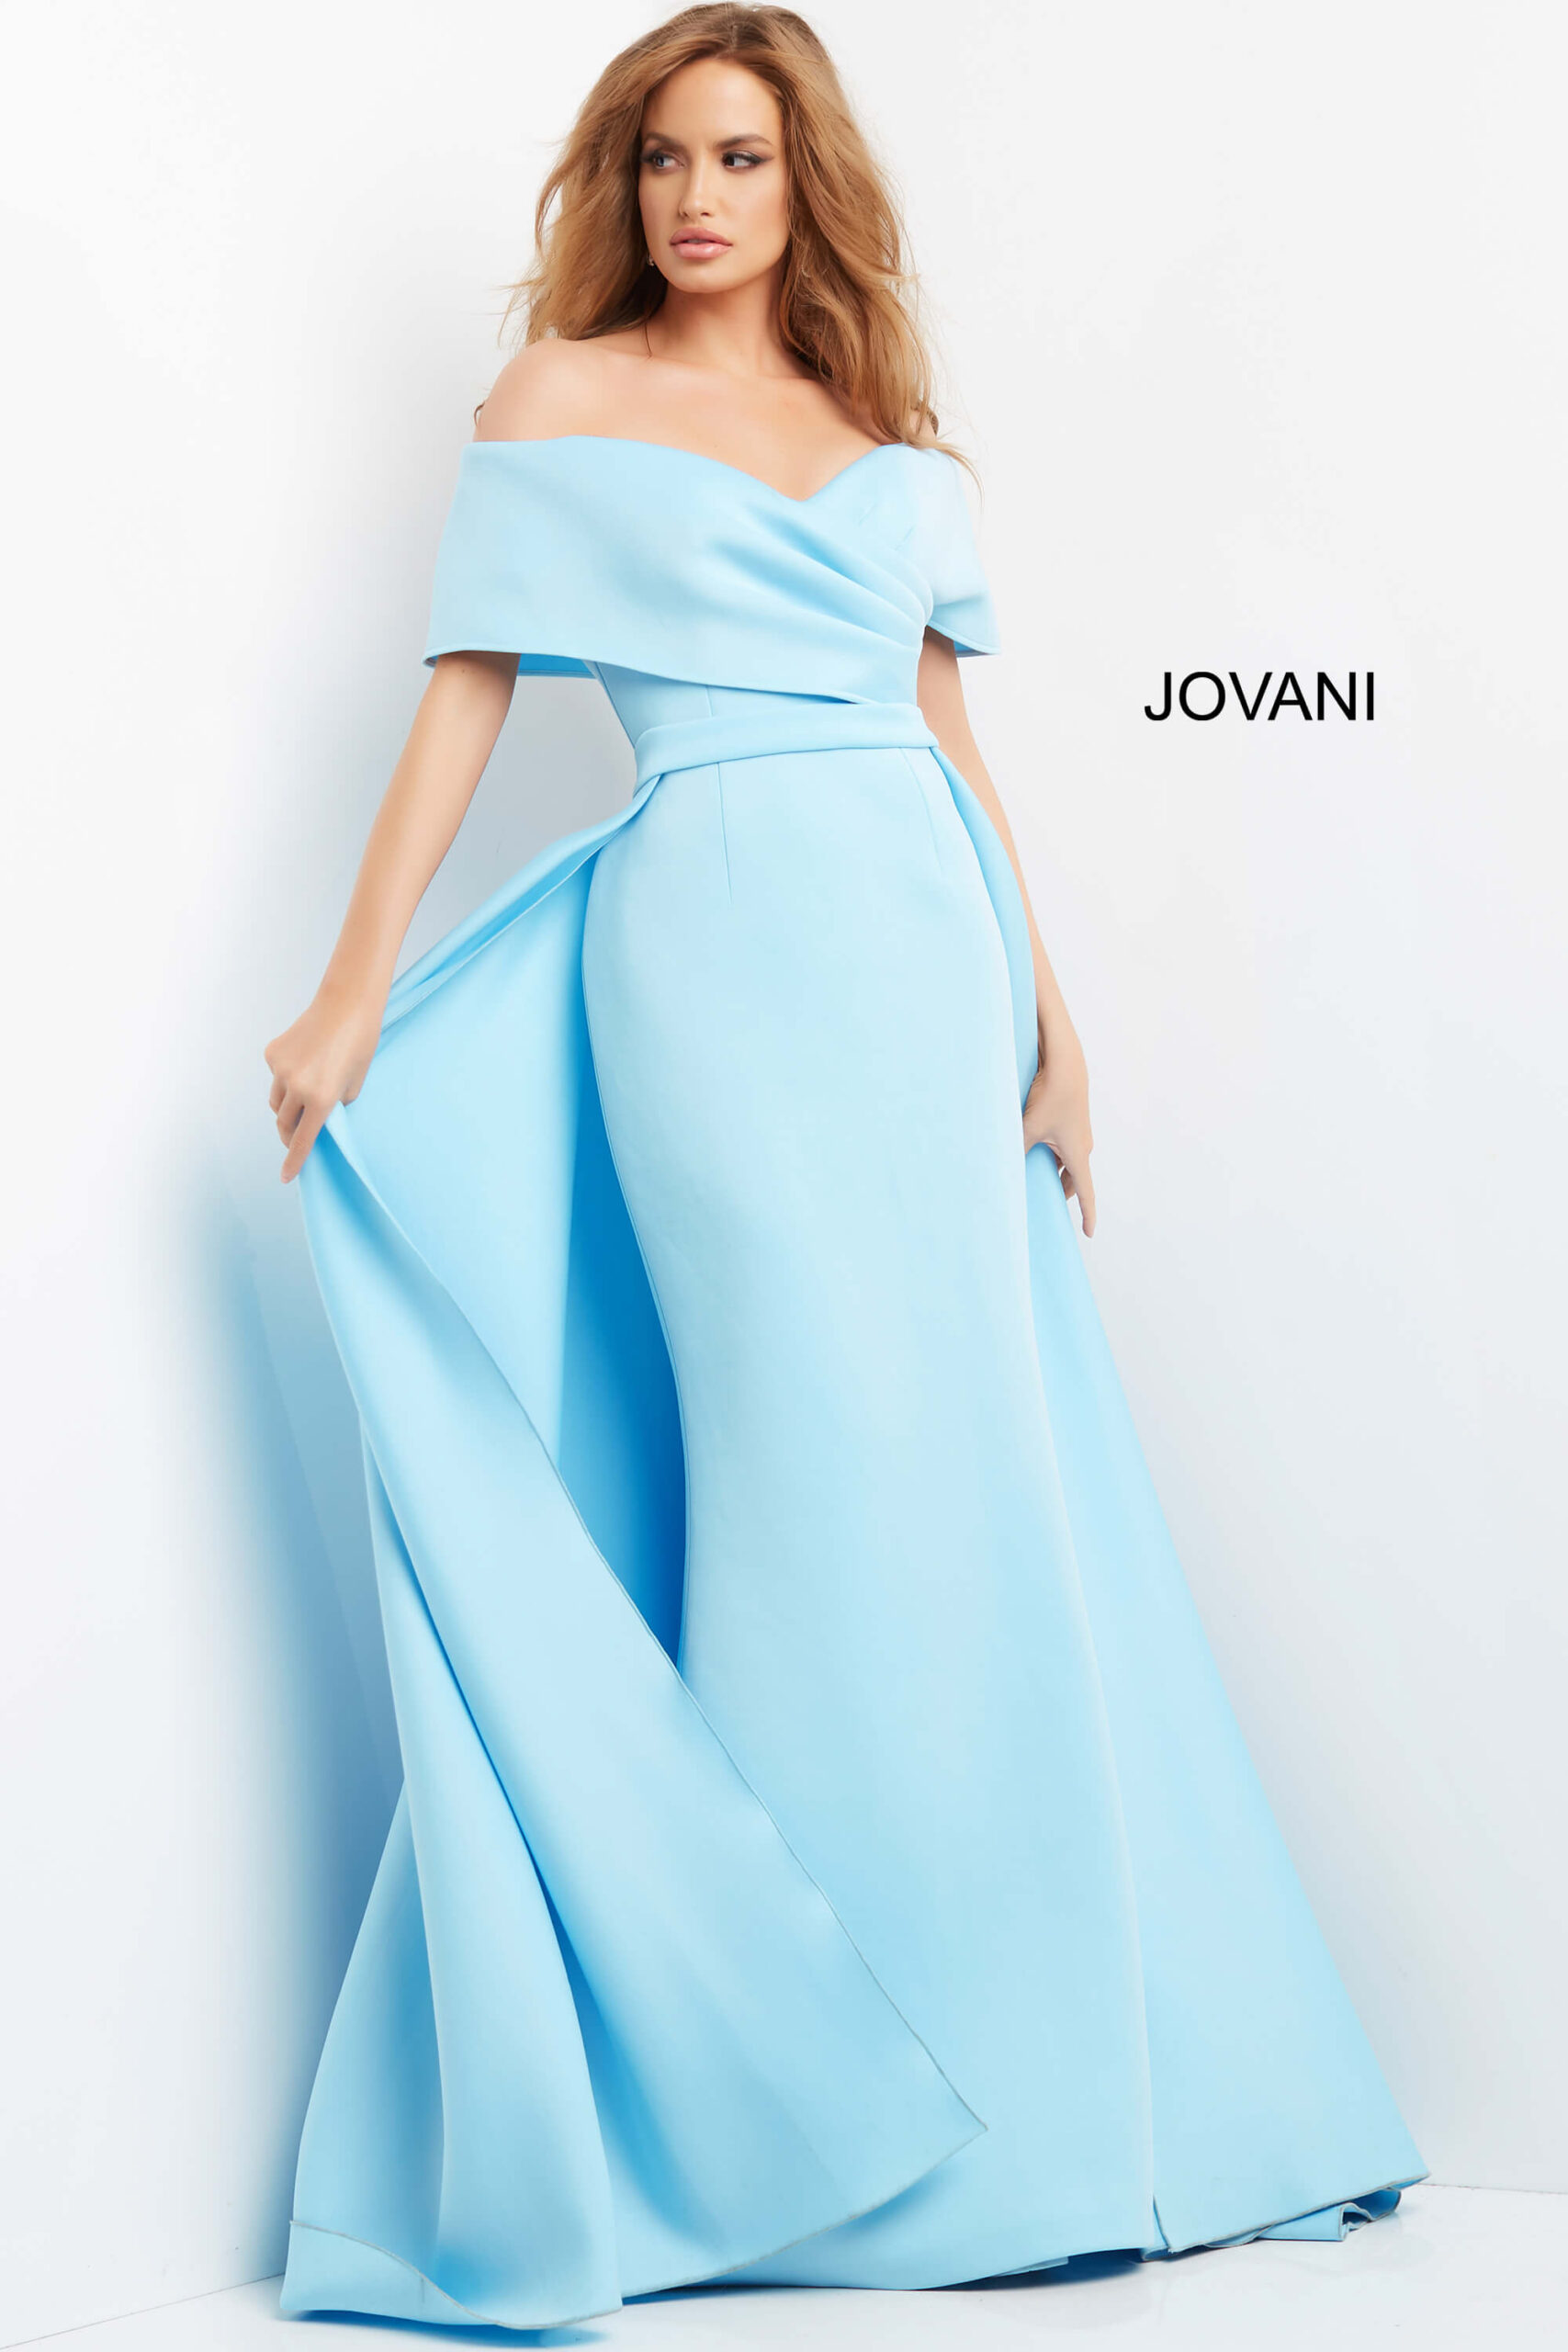 Jovani 07443 Light Blue Off the Shoulder Ruched Bodice Dress